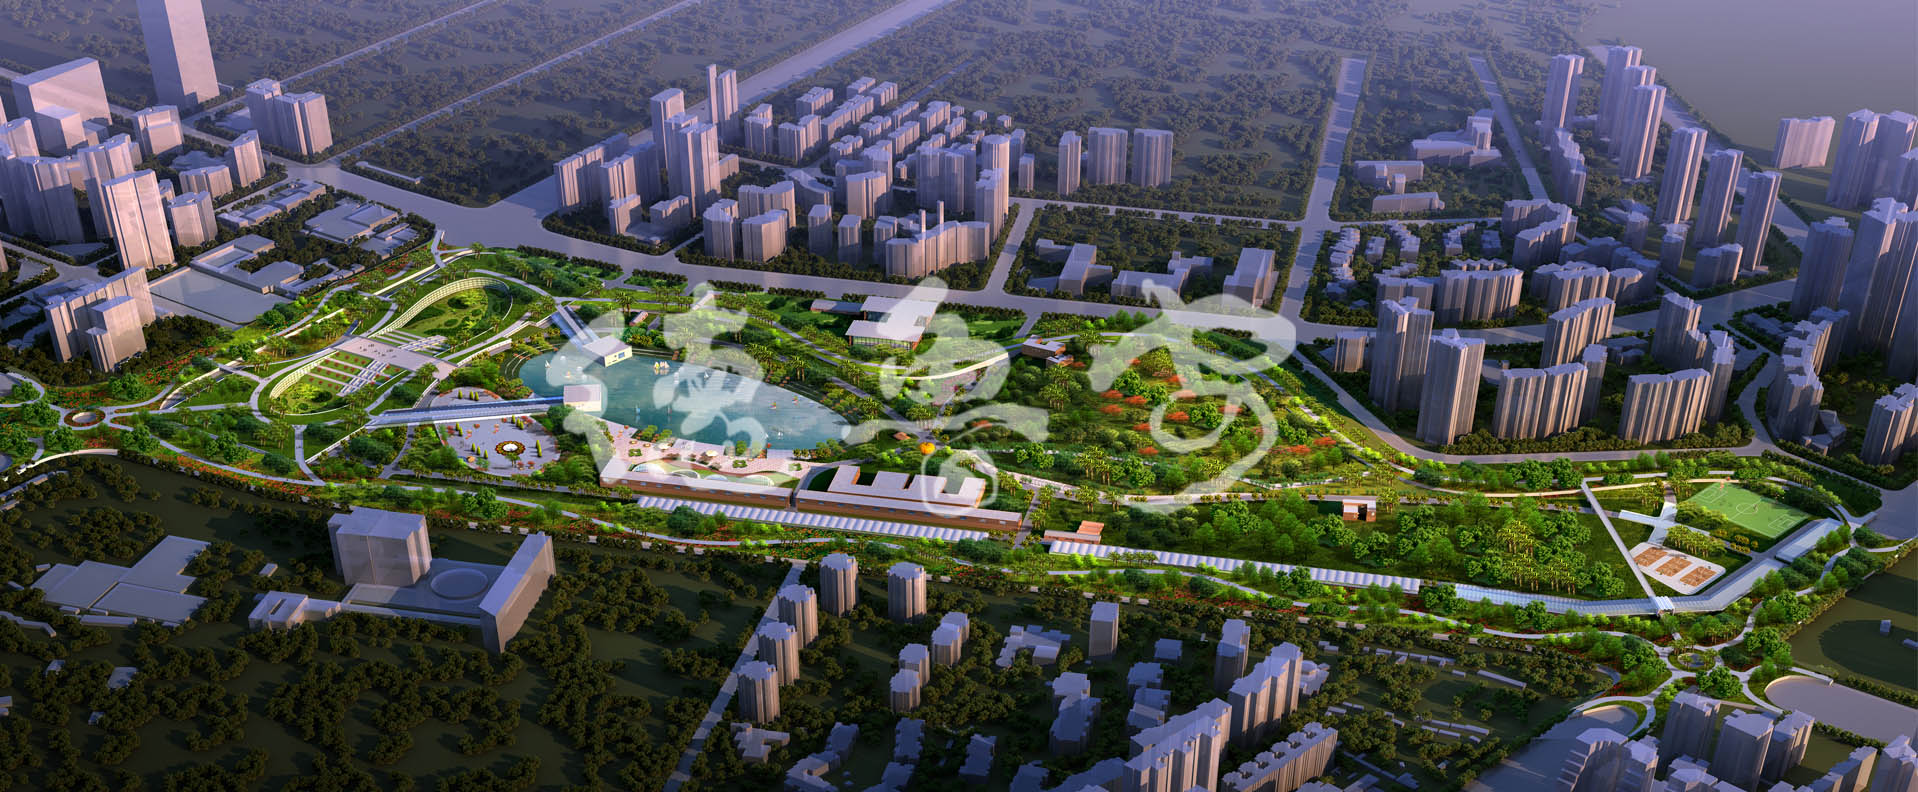 深圳市香蜜公园设计